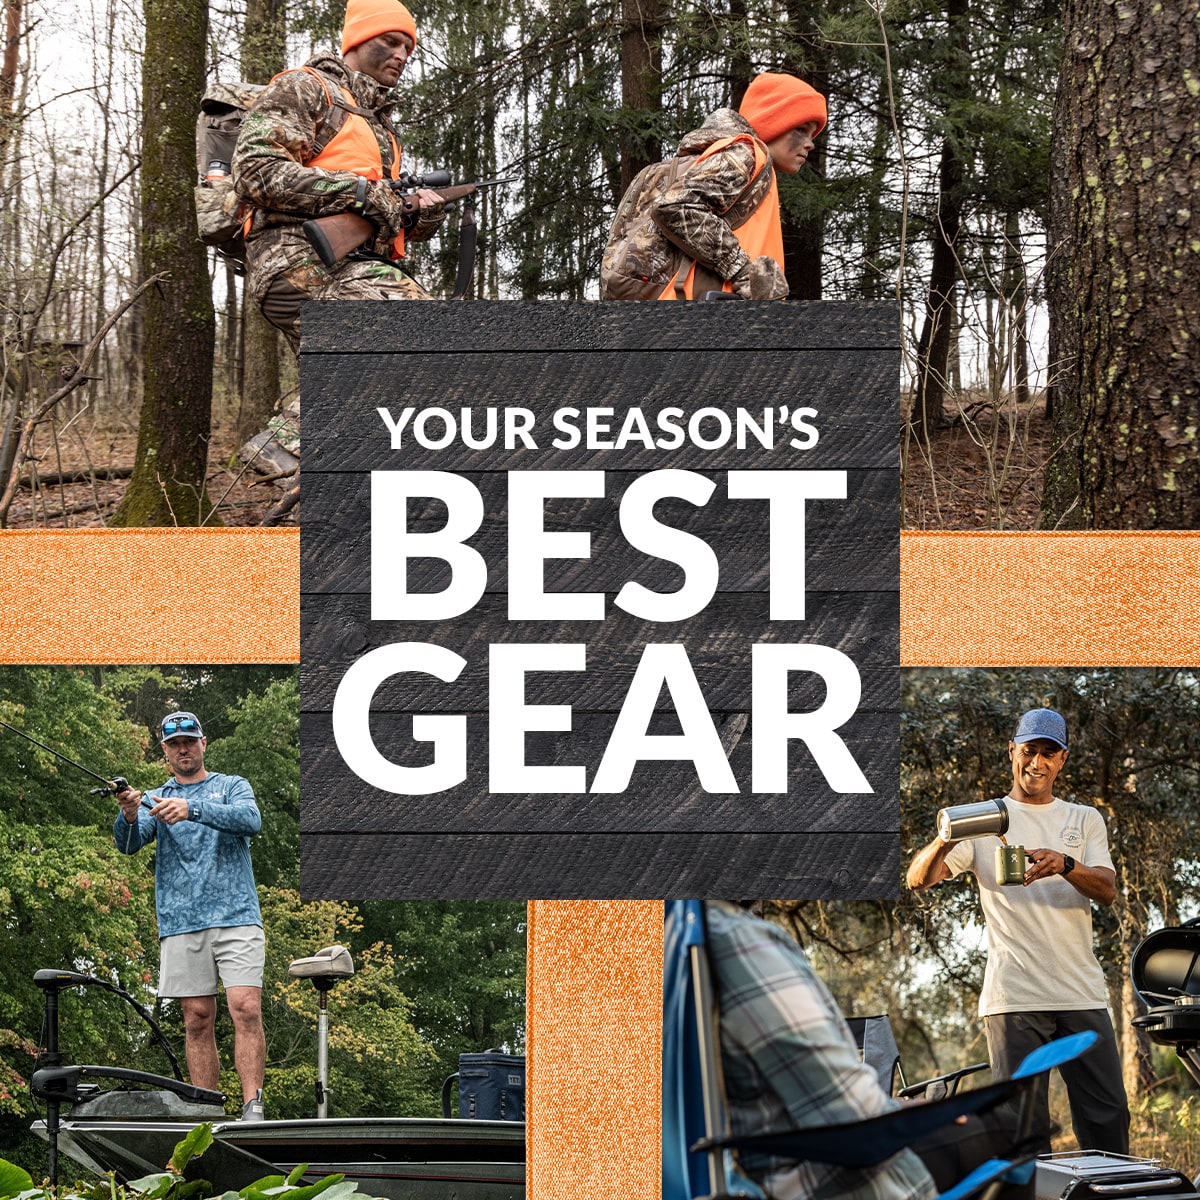 Your season's best gear.